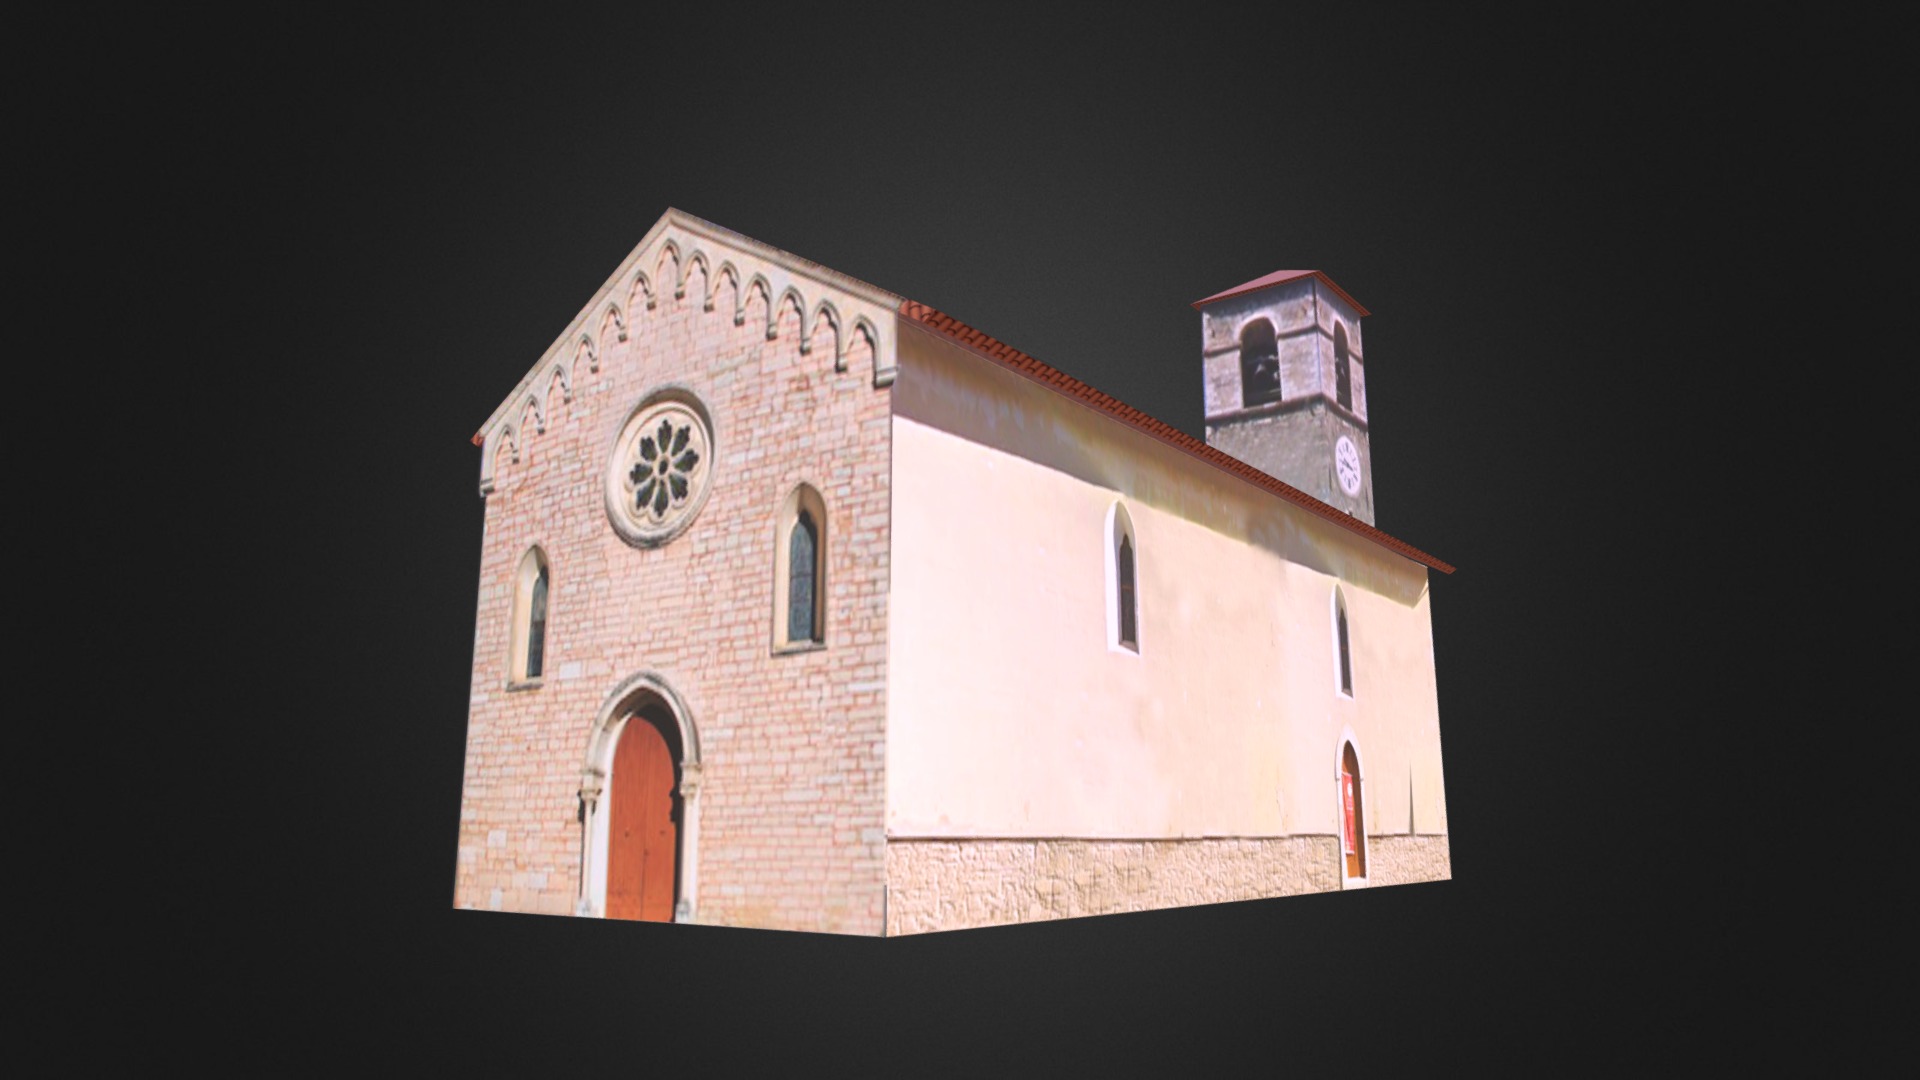 3D model Pieve di Santa Maria Assunta, Ussita - This is a 3D model of the Pieve di Santa Maria Assunta, Ussita. The 3D model is about a brick building with a clock tower.